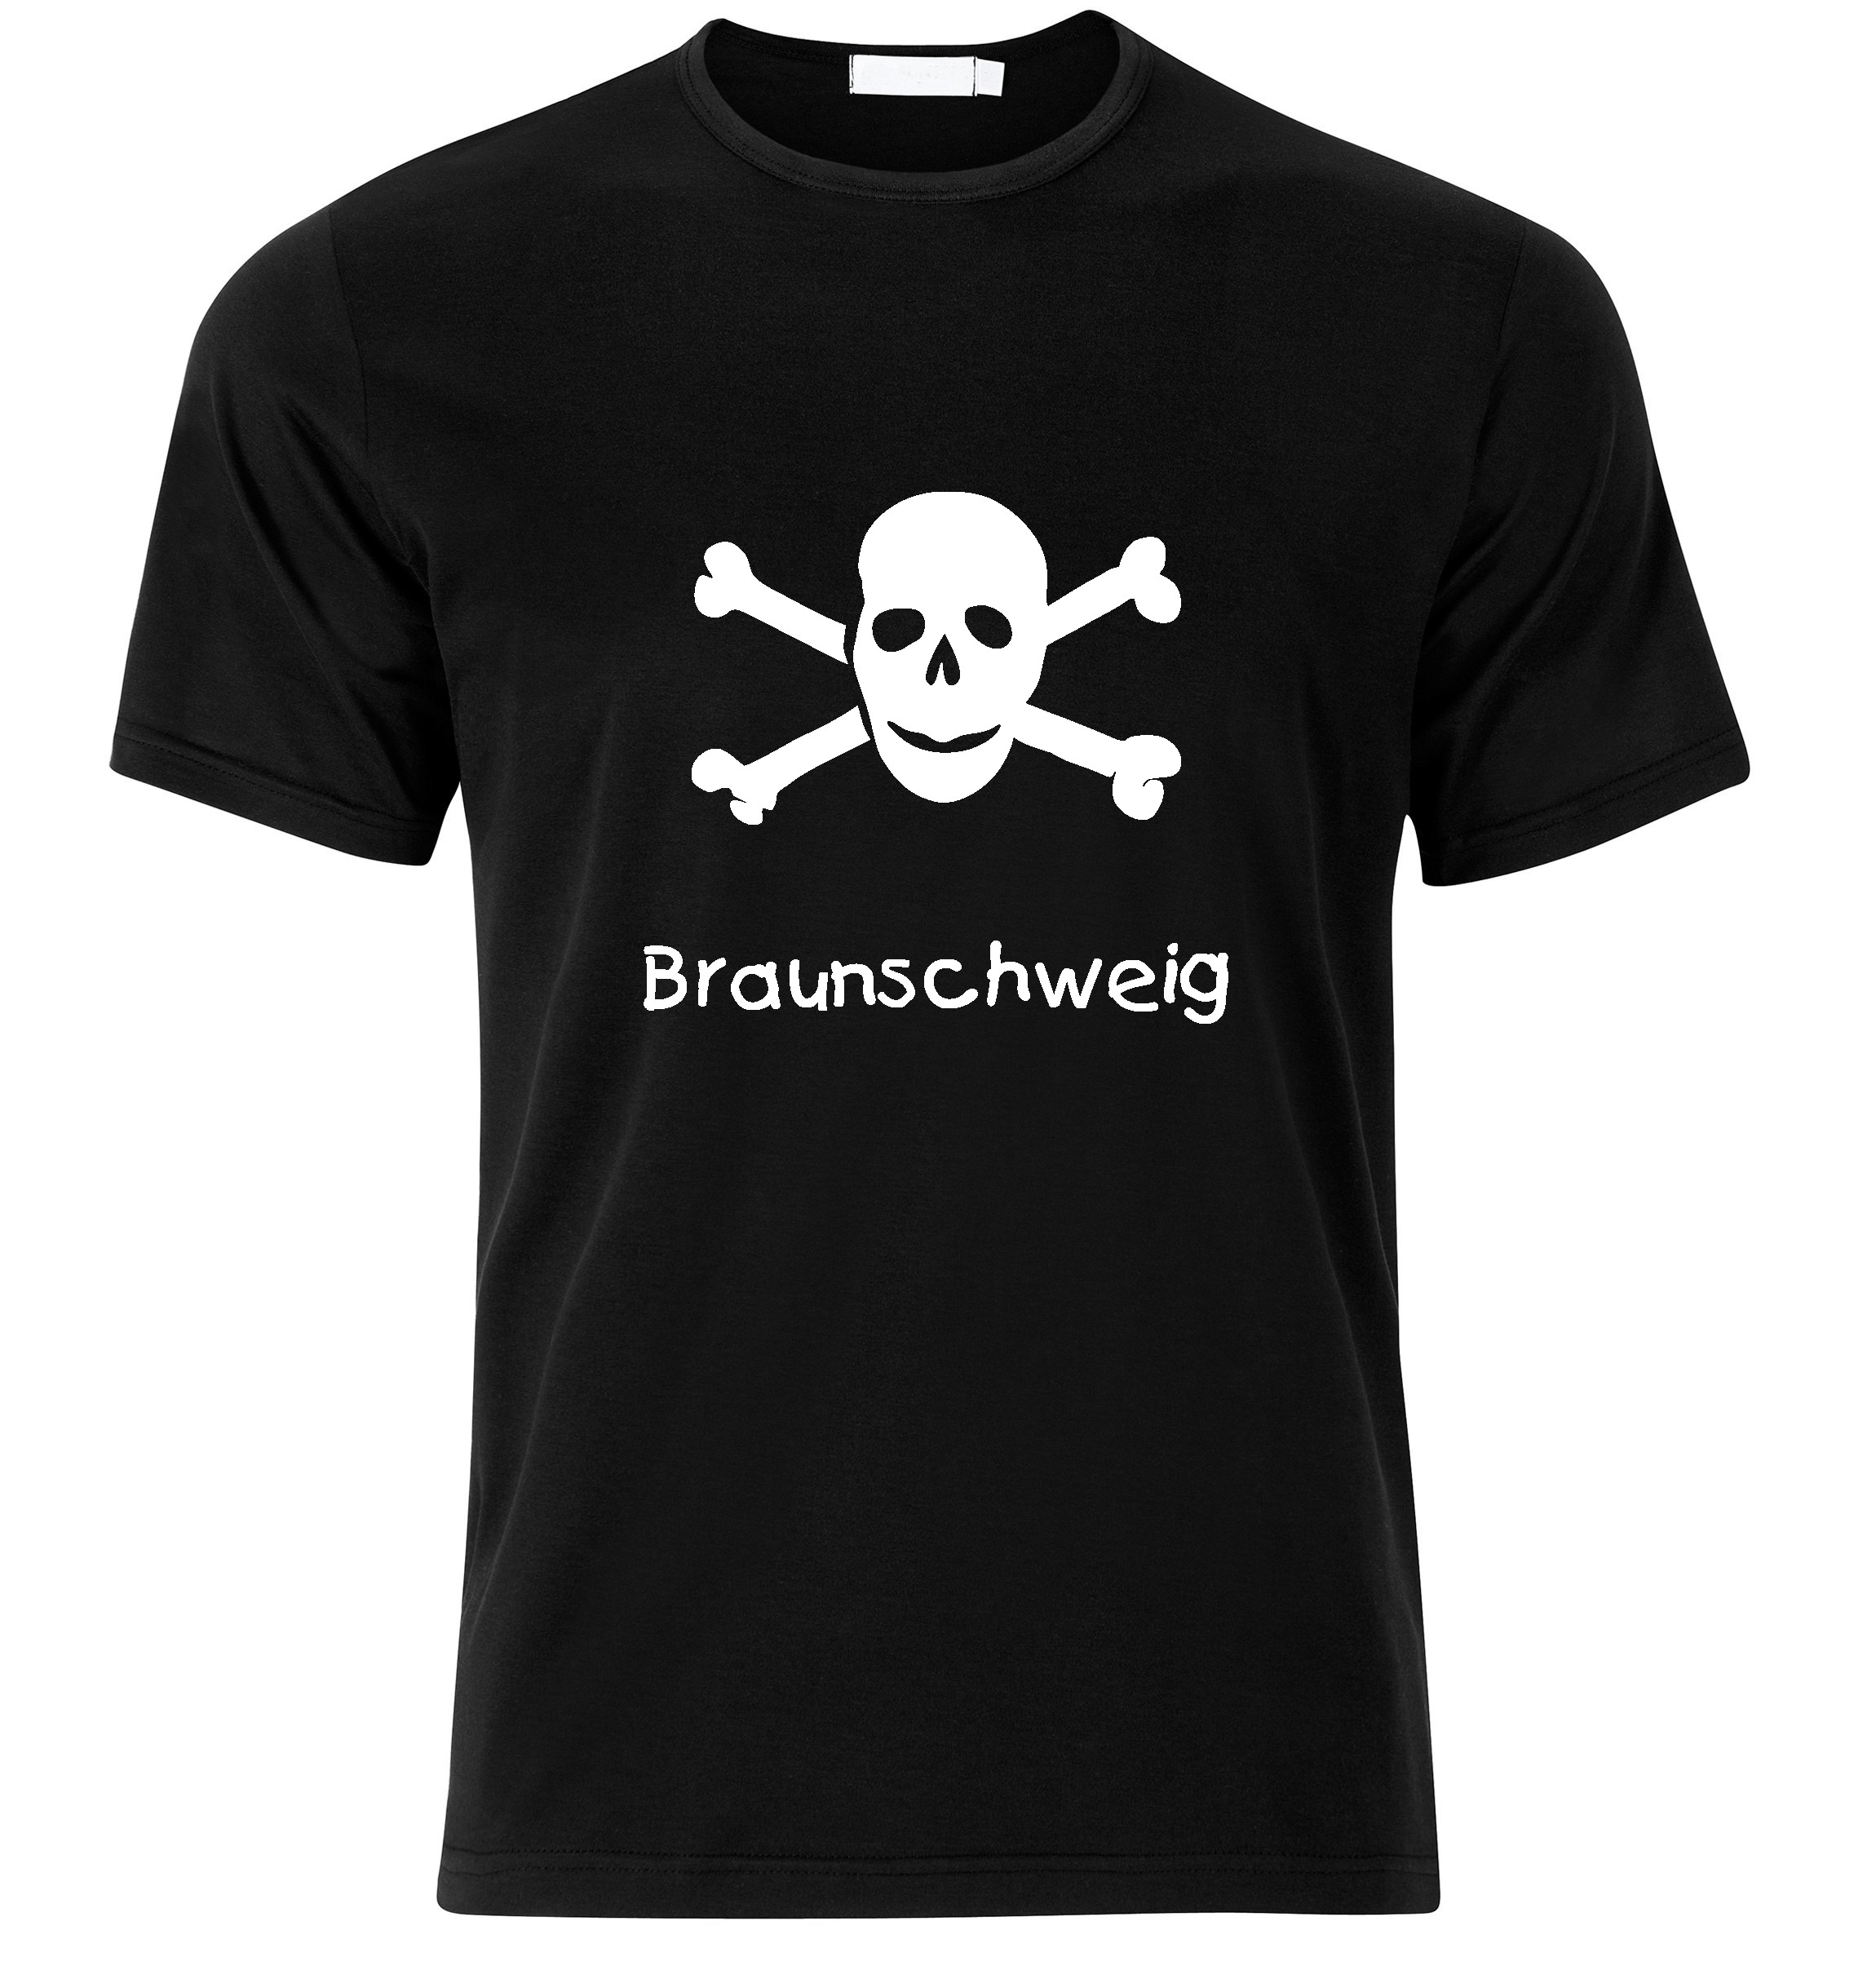 T-Shirt Braunschweig Jolly Roger, Totenkopf